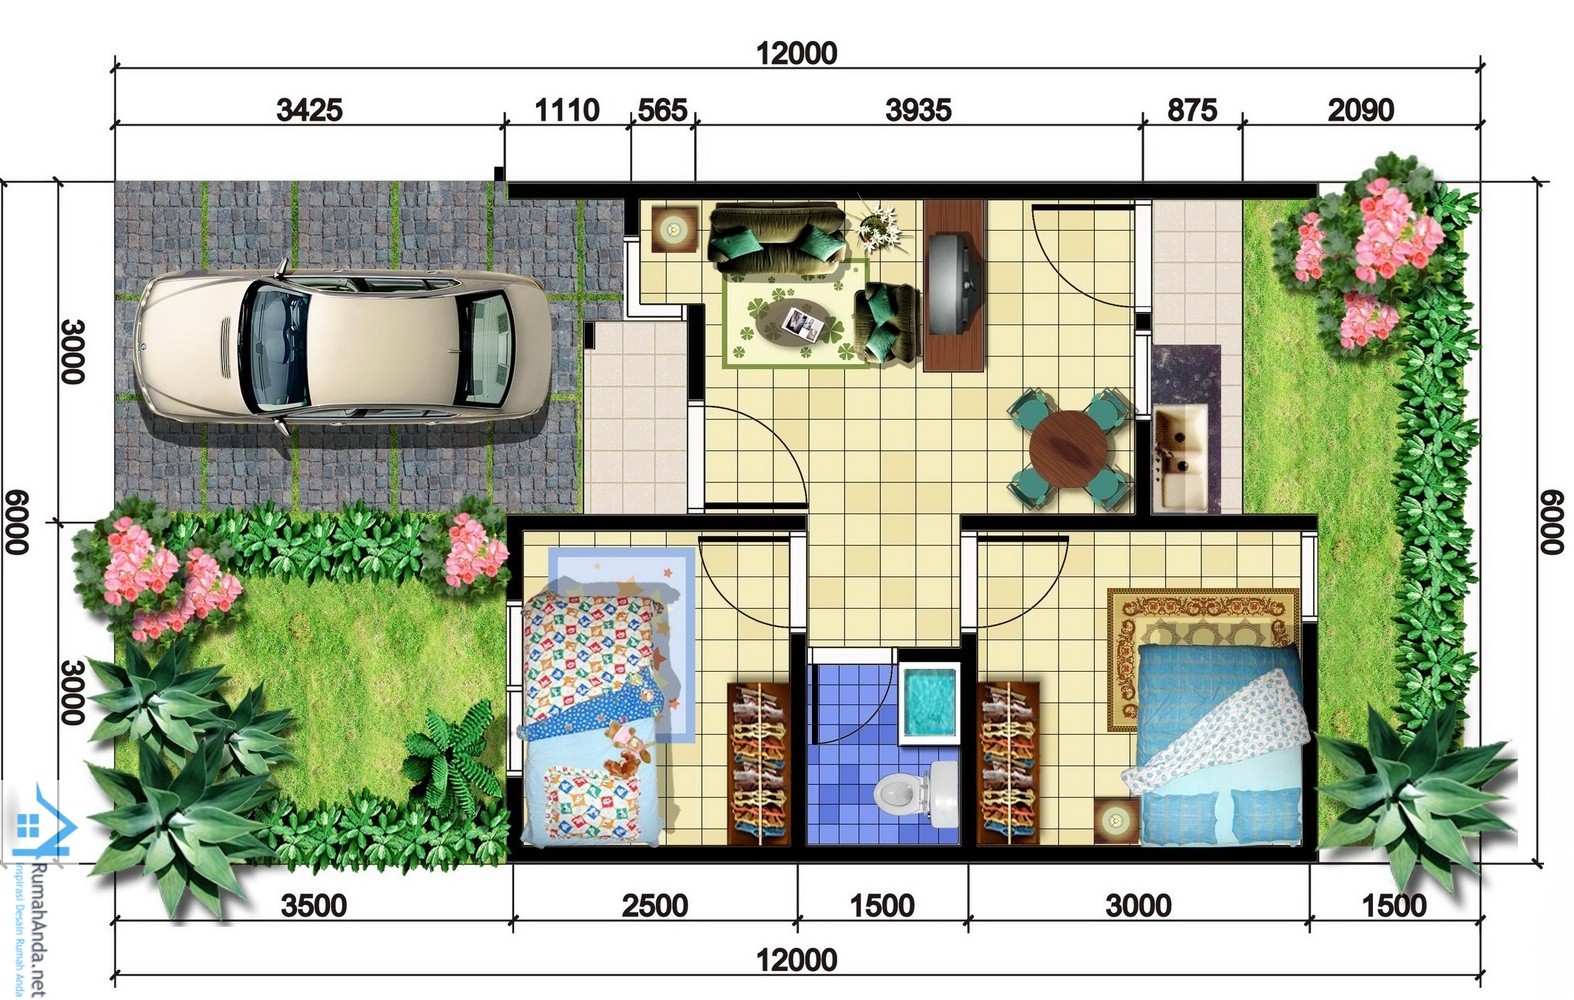 69 Desain Rumah Minimalis Ukuran 6x12 Desain Rumah Minimalis Terbaru